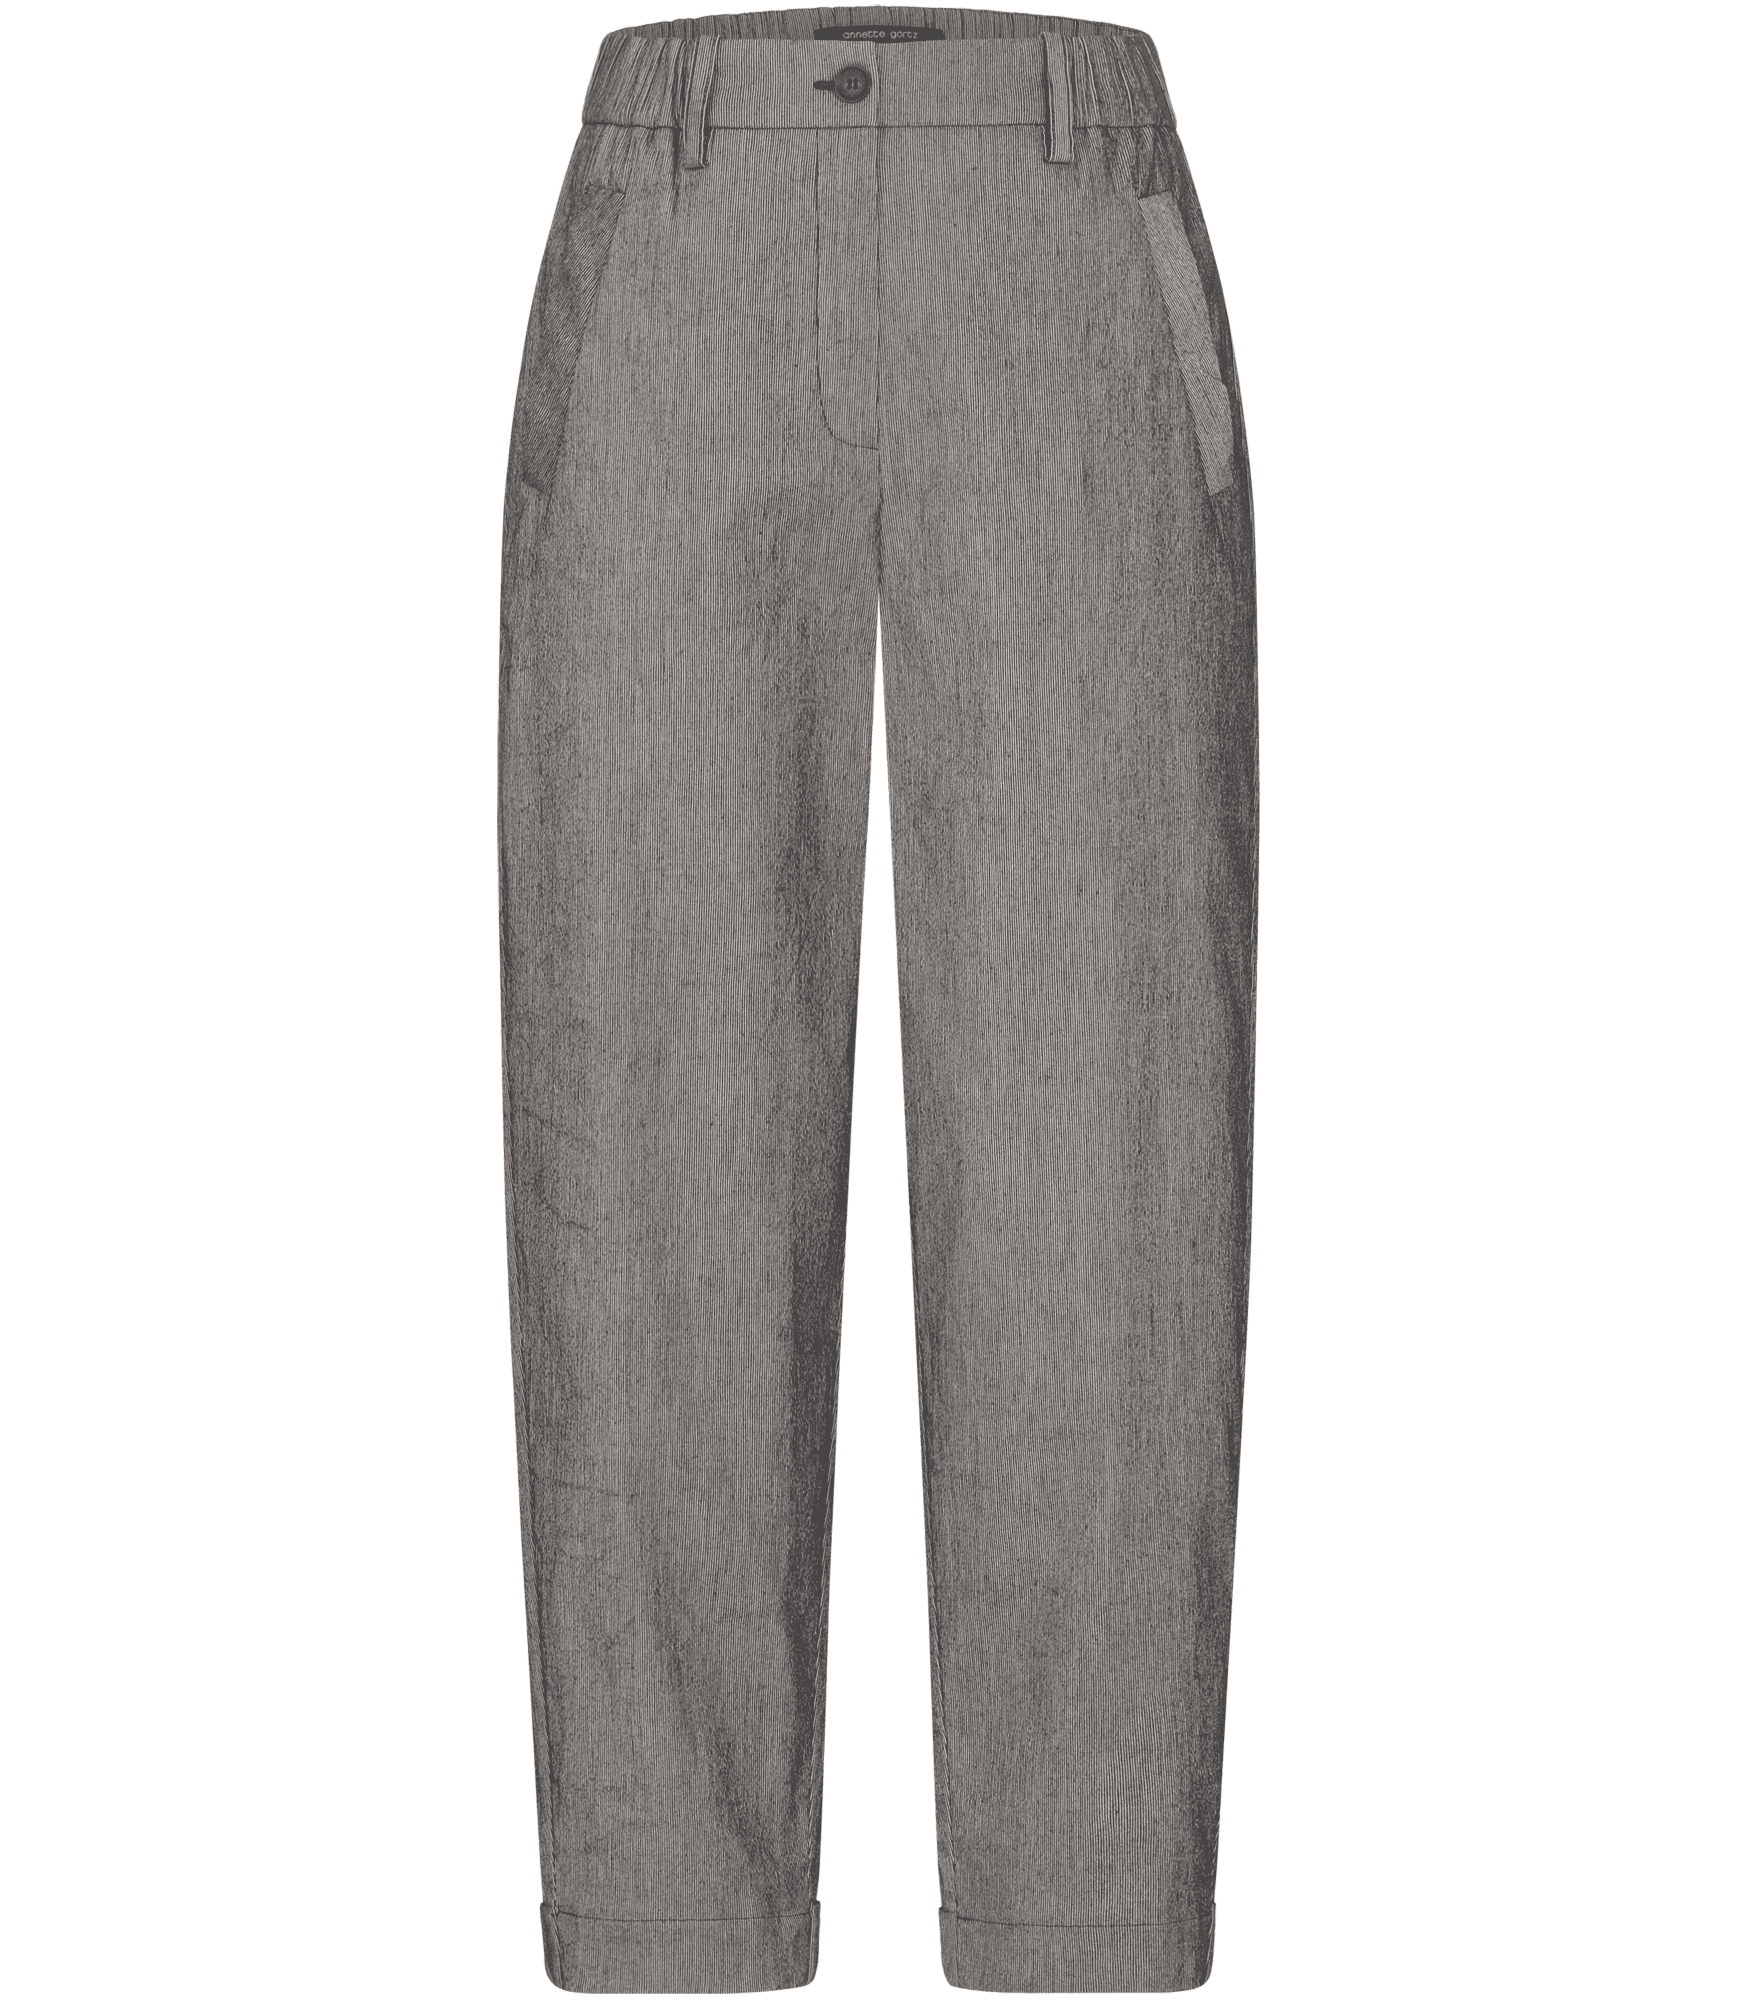 Lace | Pants | Annette Goertz online store